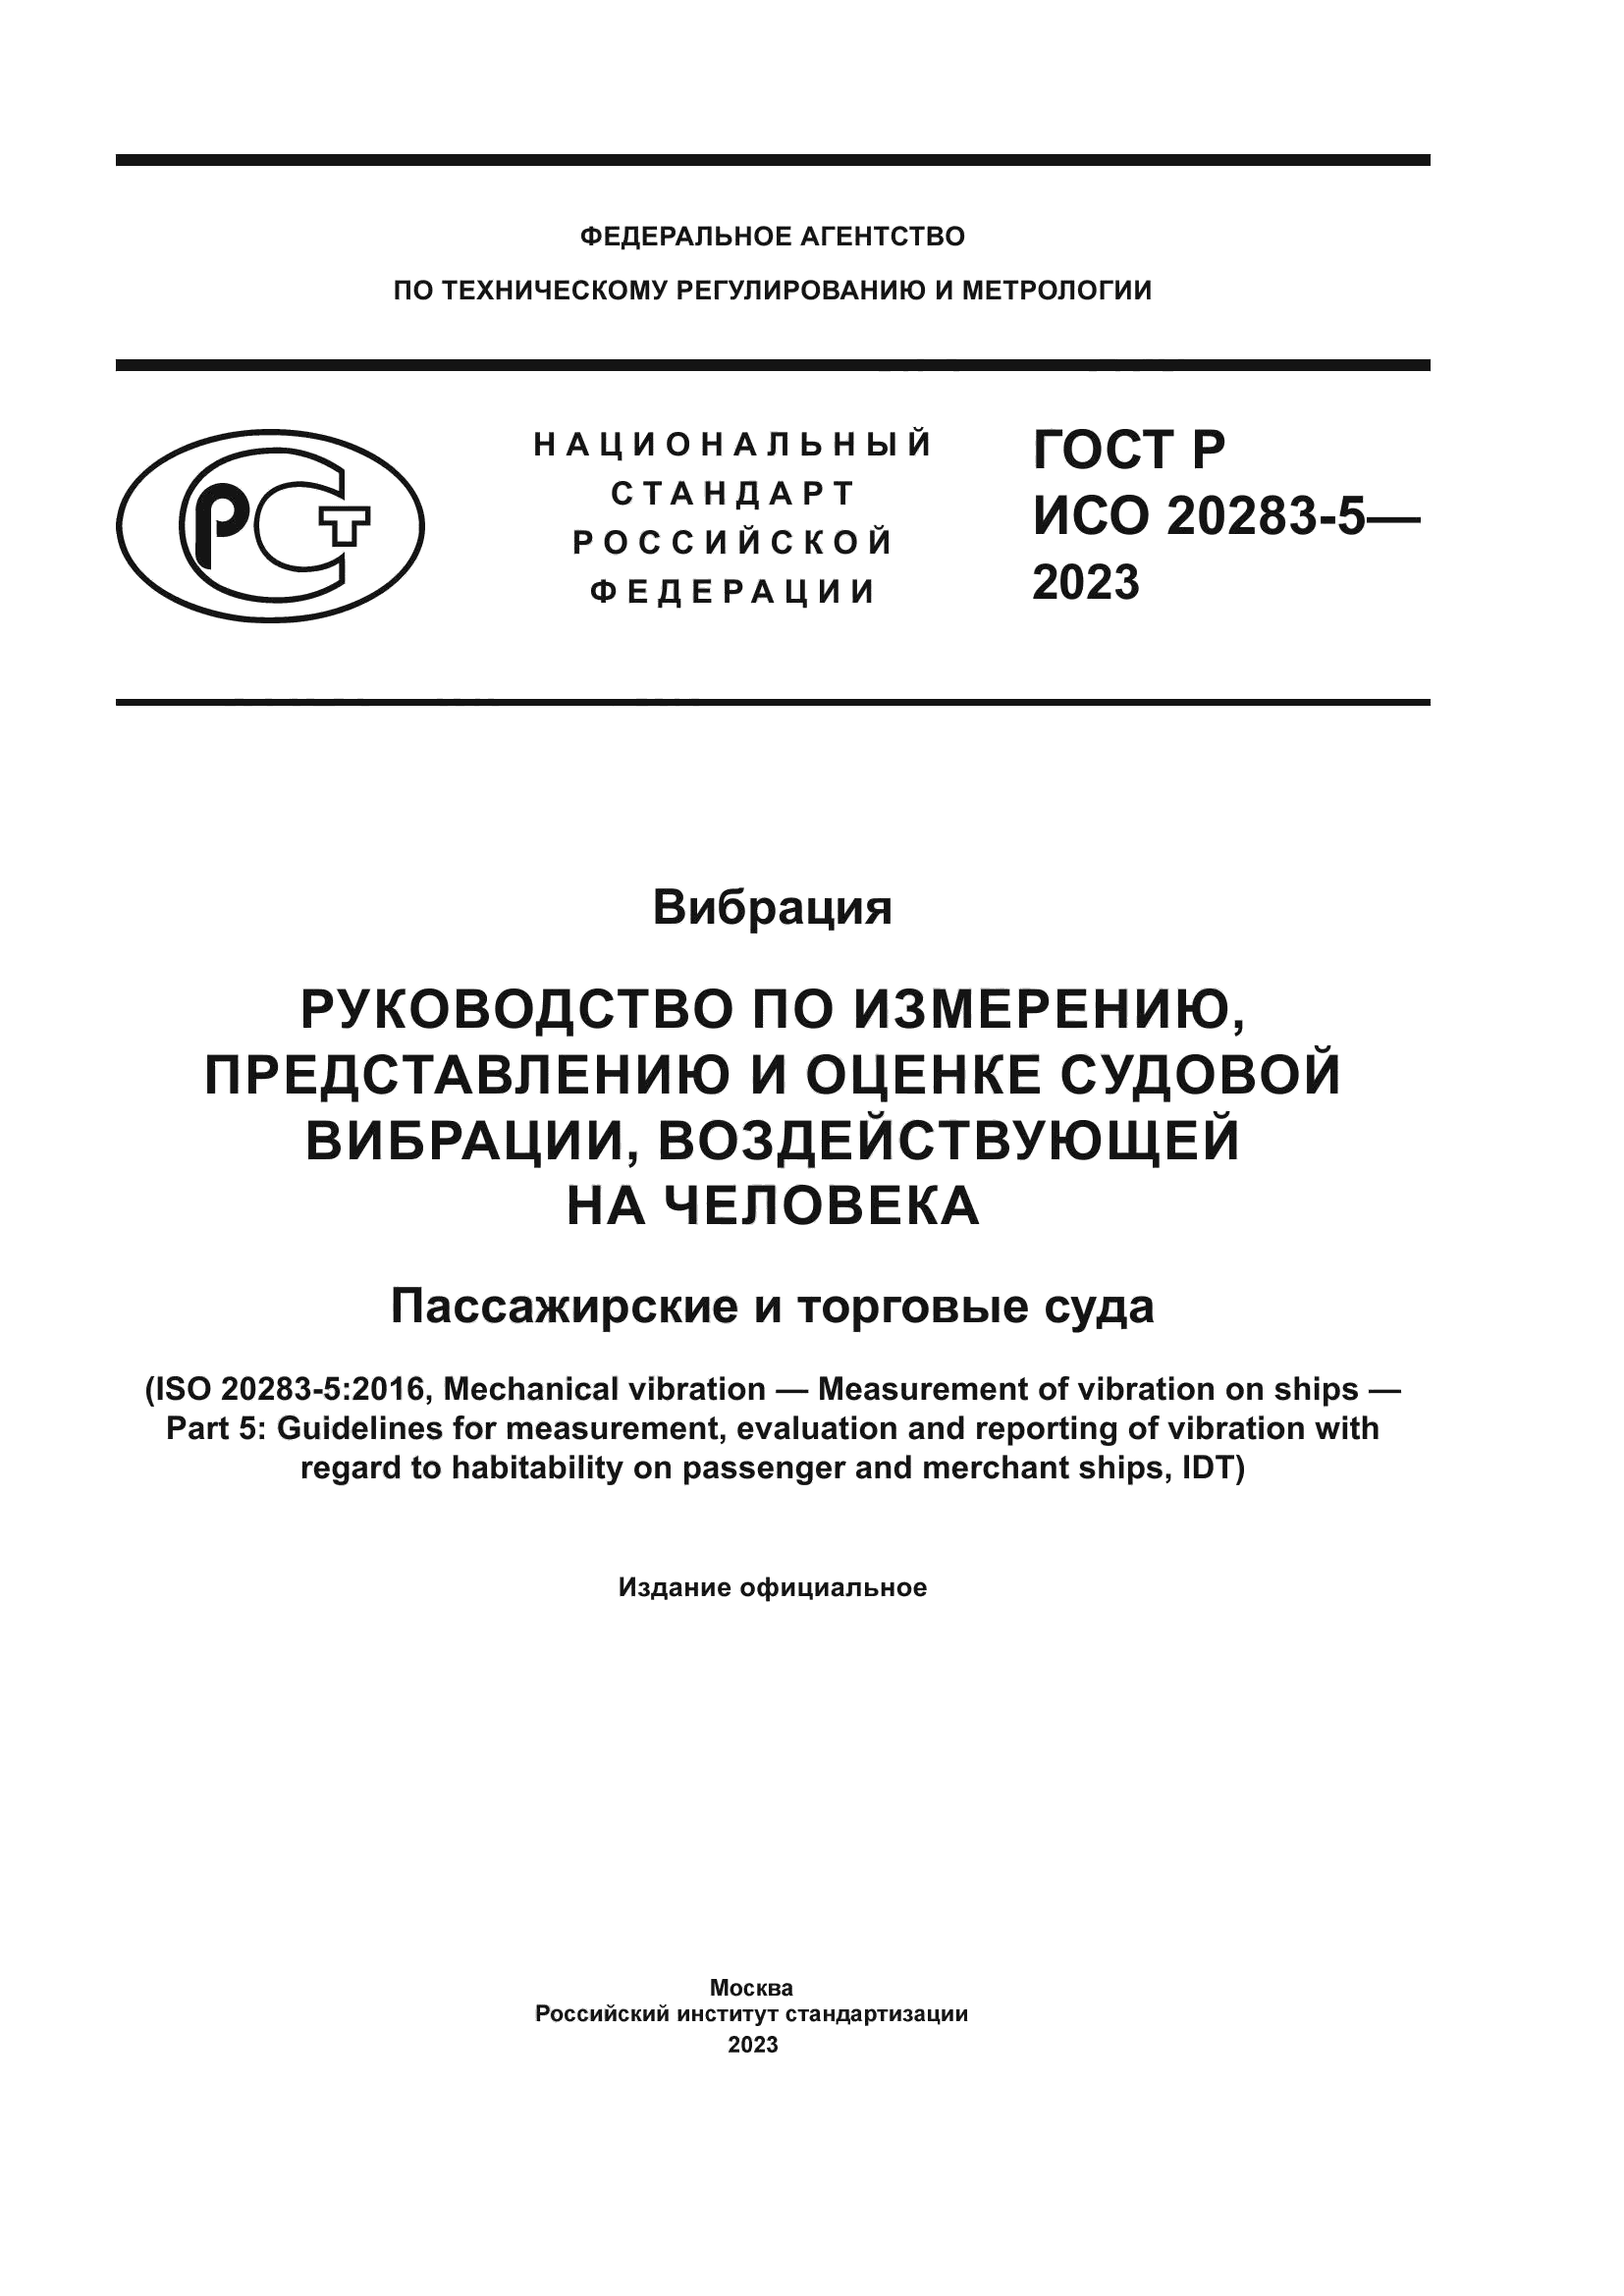 ГОСТ Р ИСО 20283-5-2023